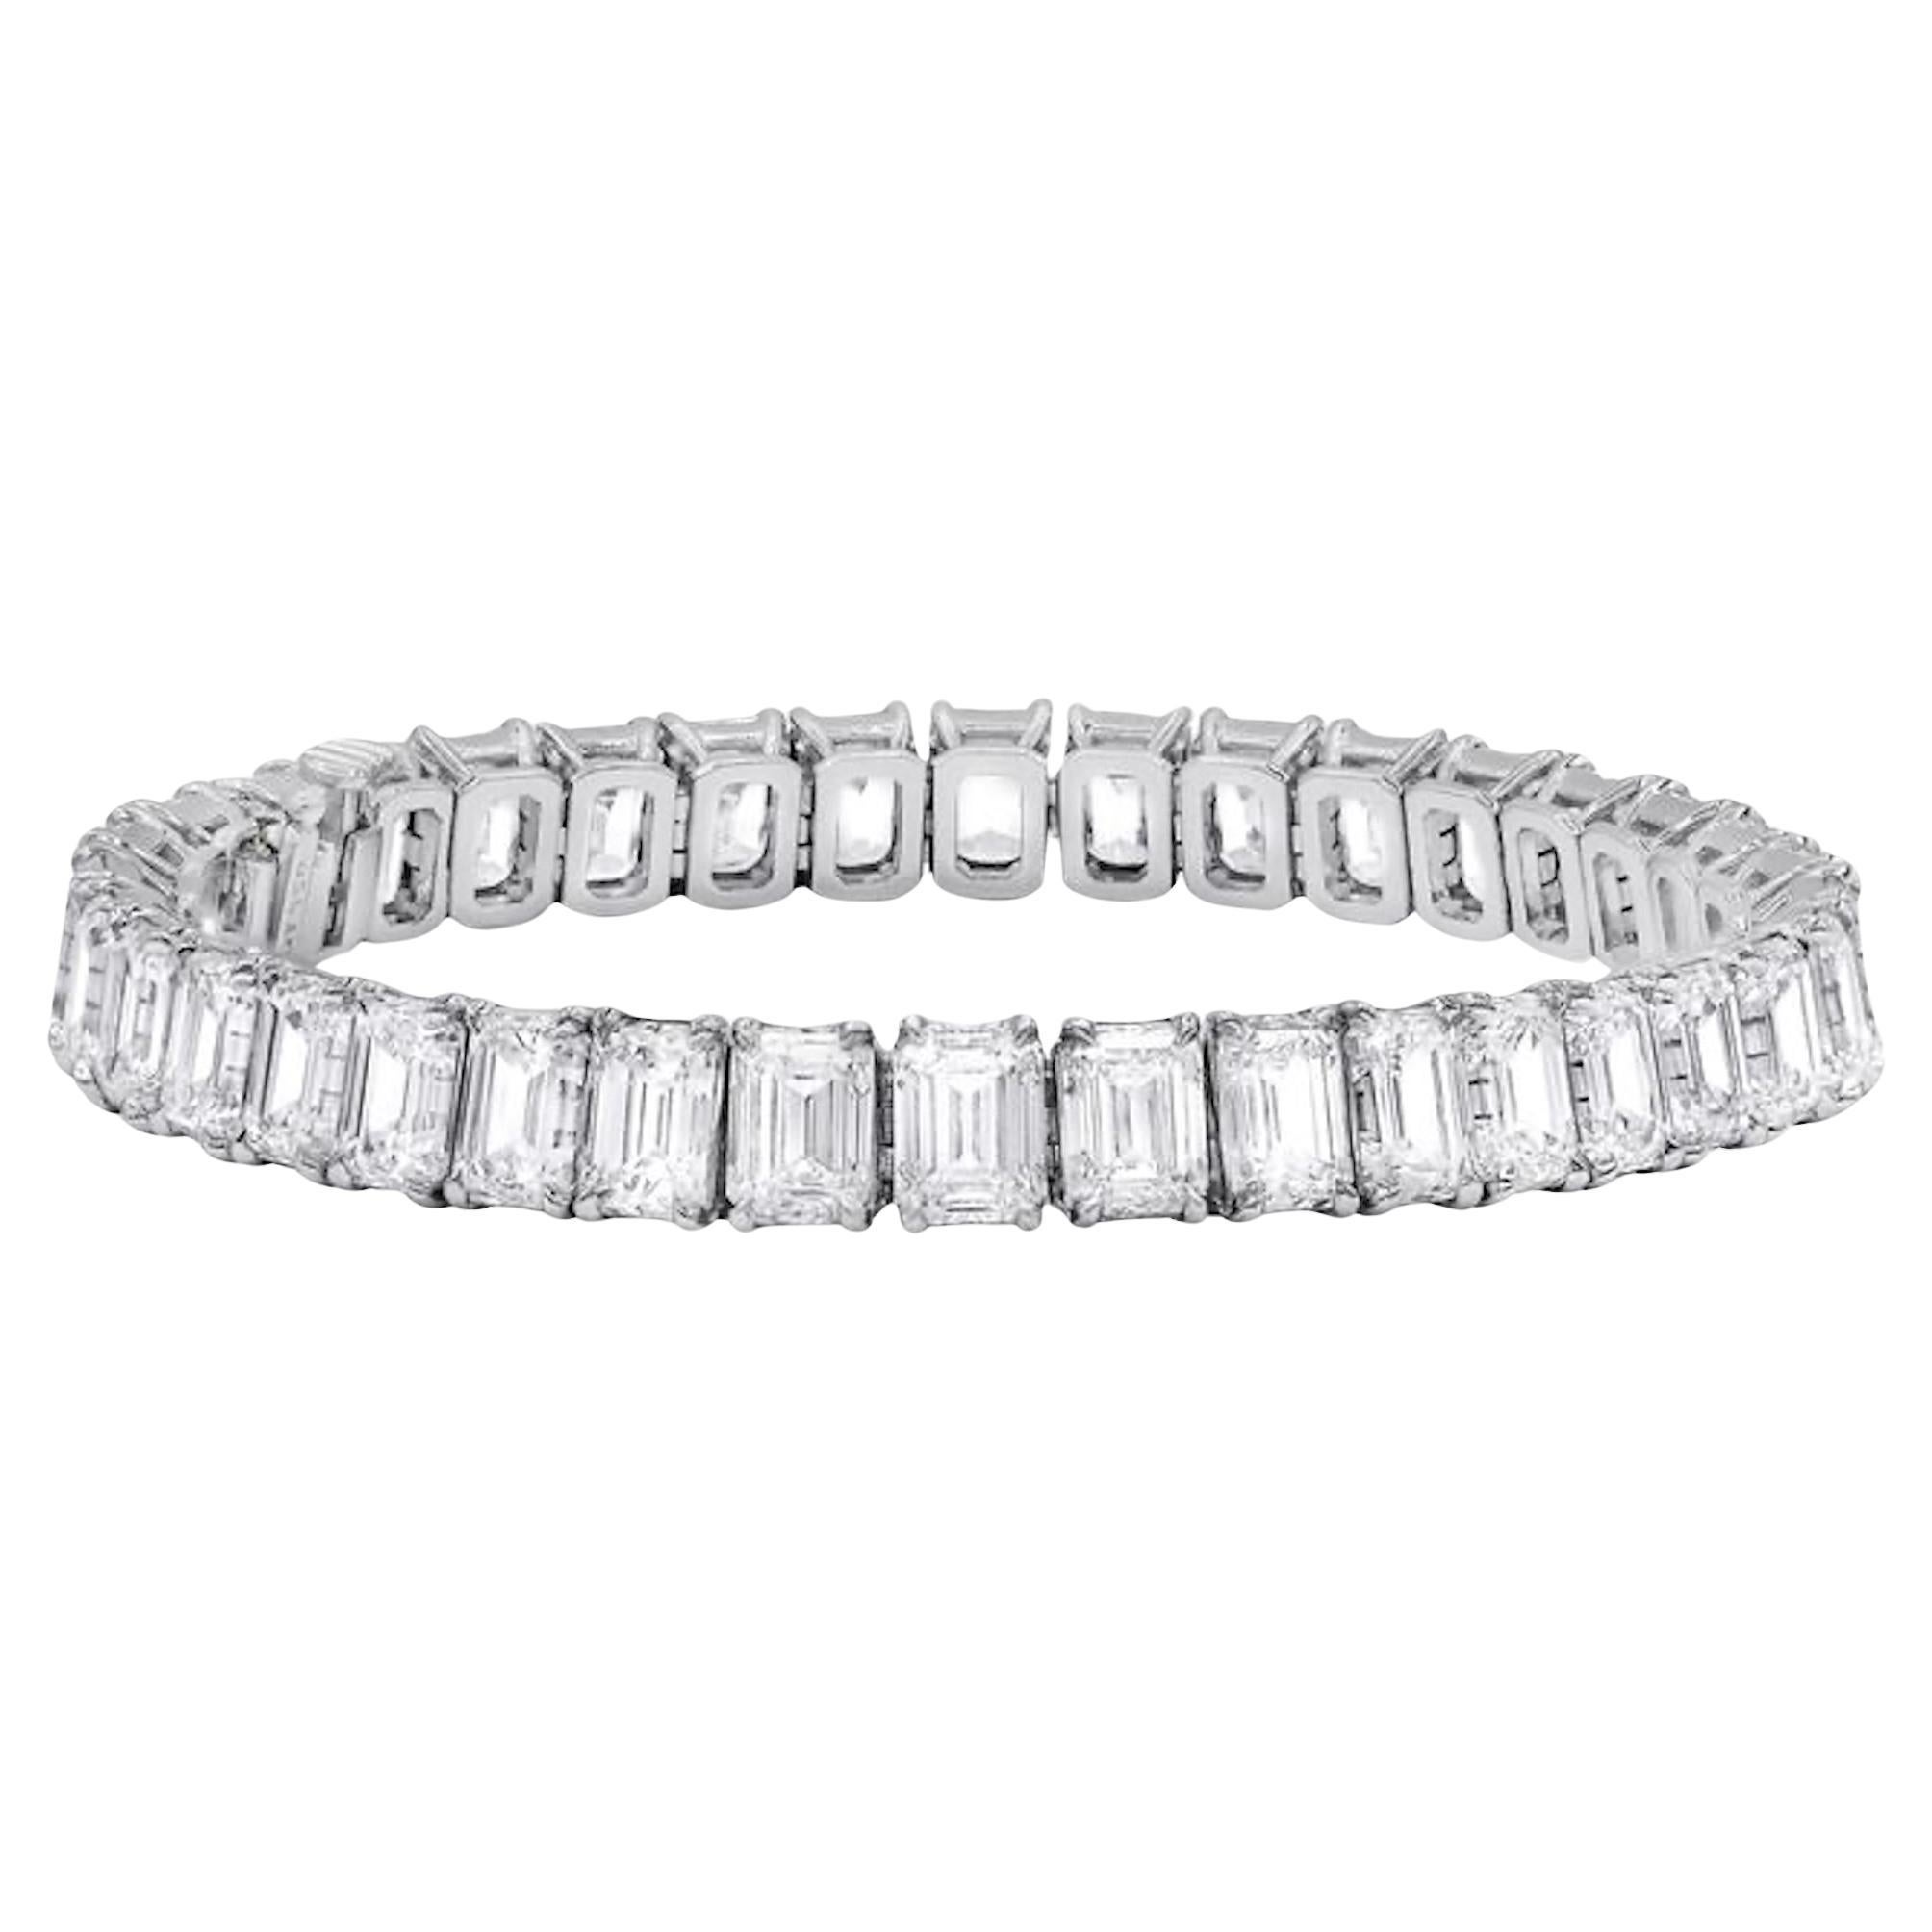 Diana M. Bracelet de diamants taille émeraude de 26,97 carats à 4 griffes 